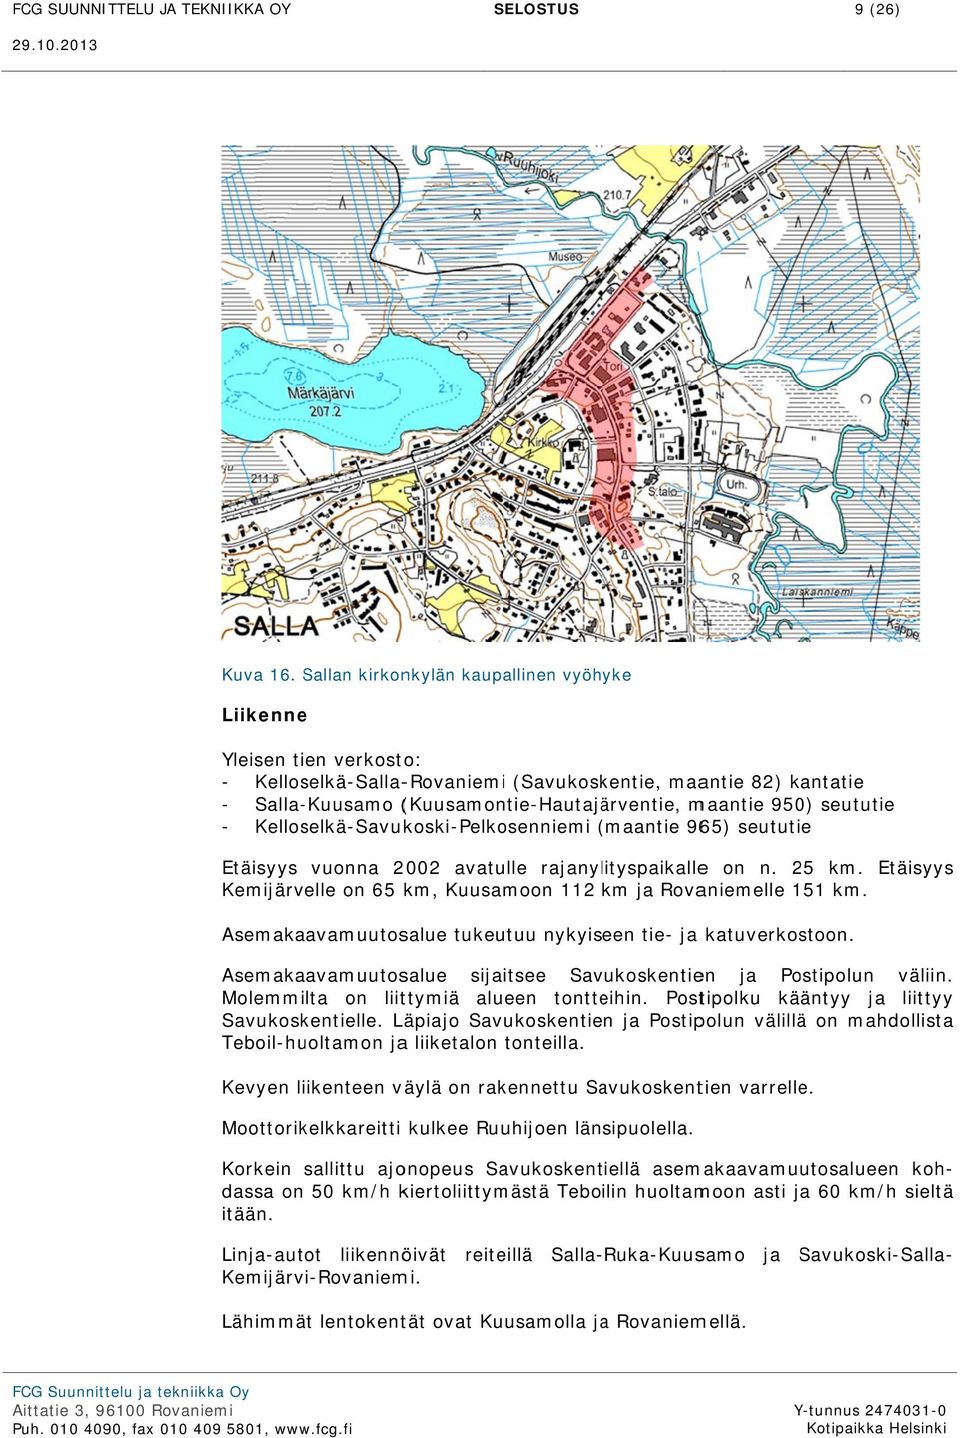 seututie - Kelloselkä-Savukoski-Pelkosenniemi (maantie( 965) seututie Etäisyys vuonna 2002 avatulle rajanylityspaikallee on n. 25 km.